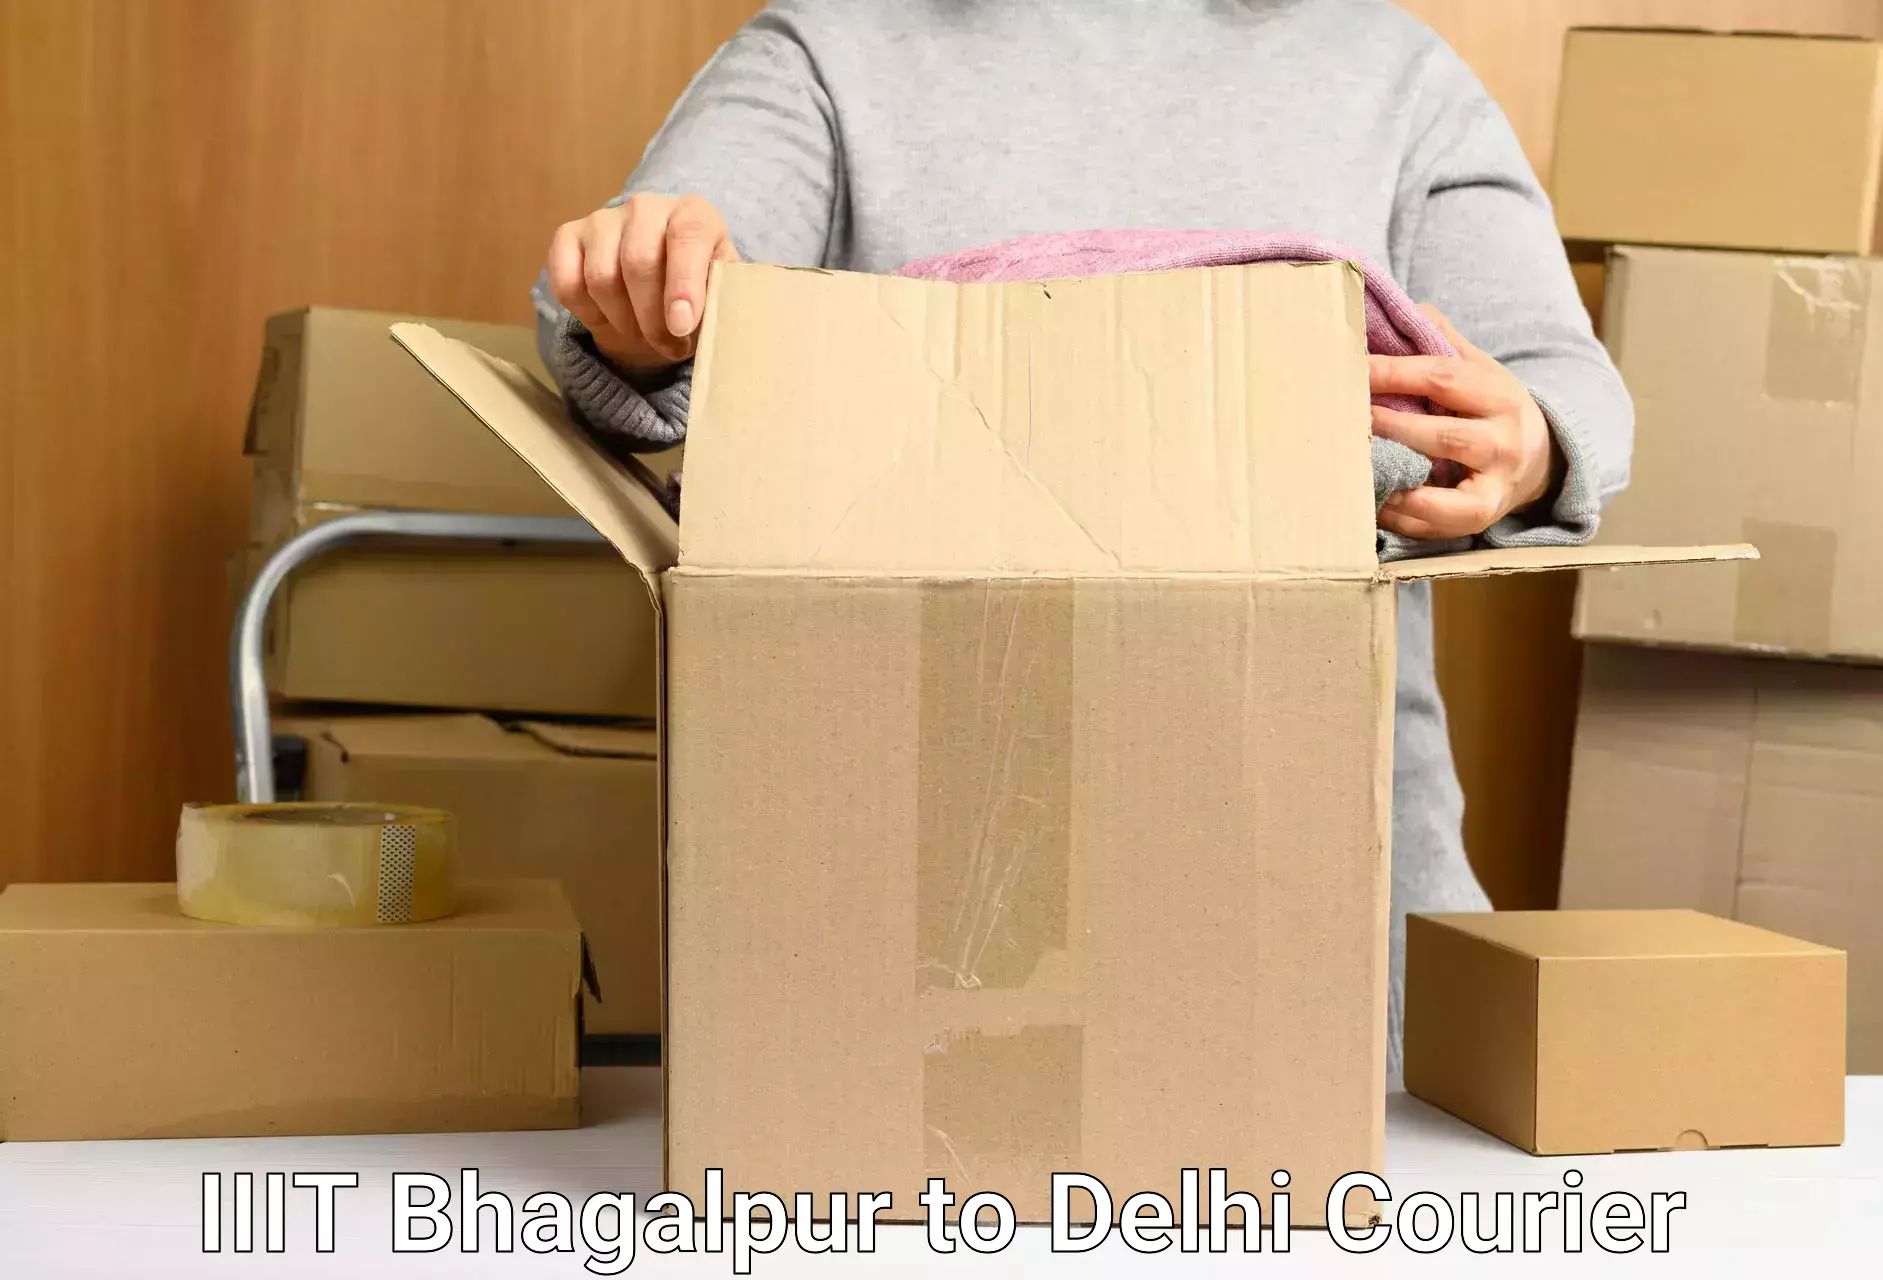 Modern parcel services IIIT Bhagalpur to Kalkaji